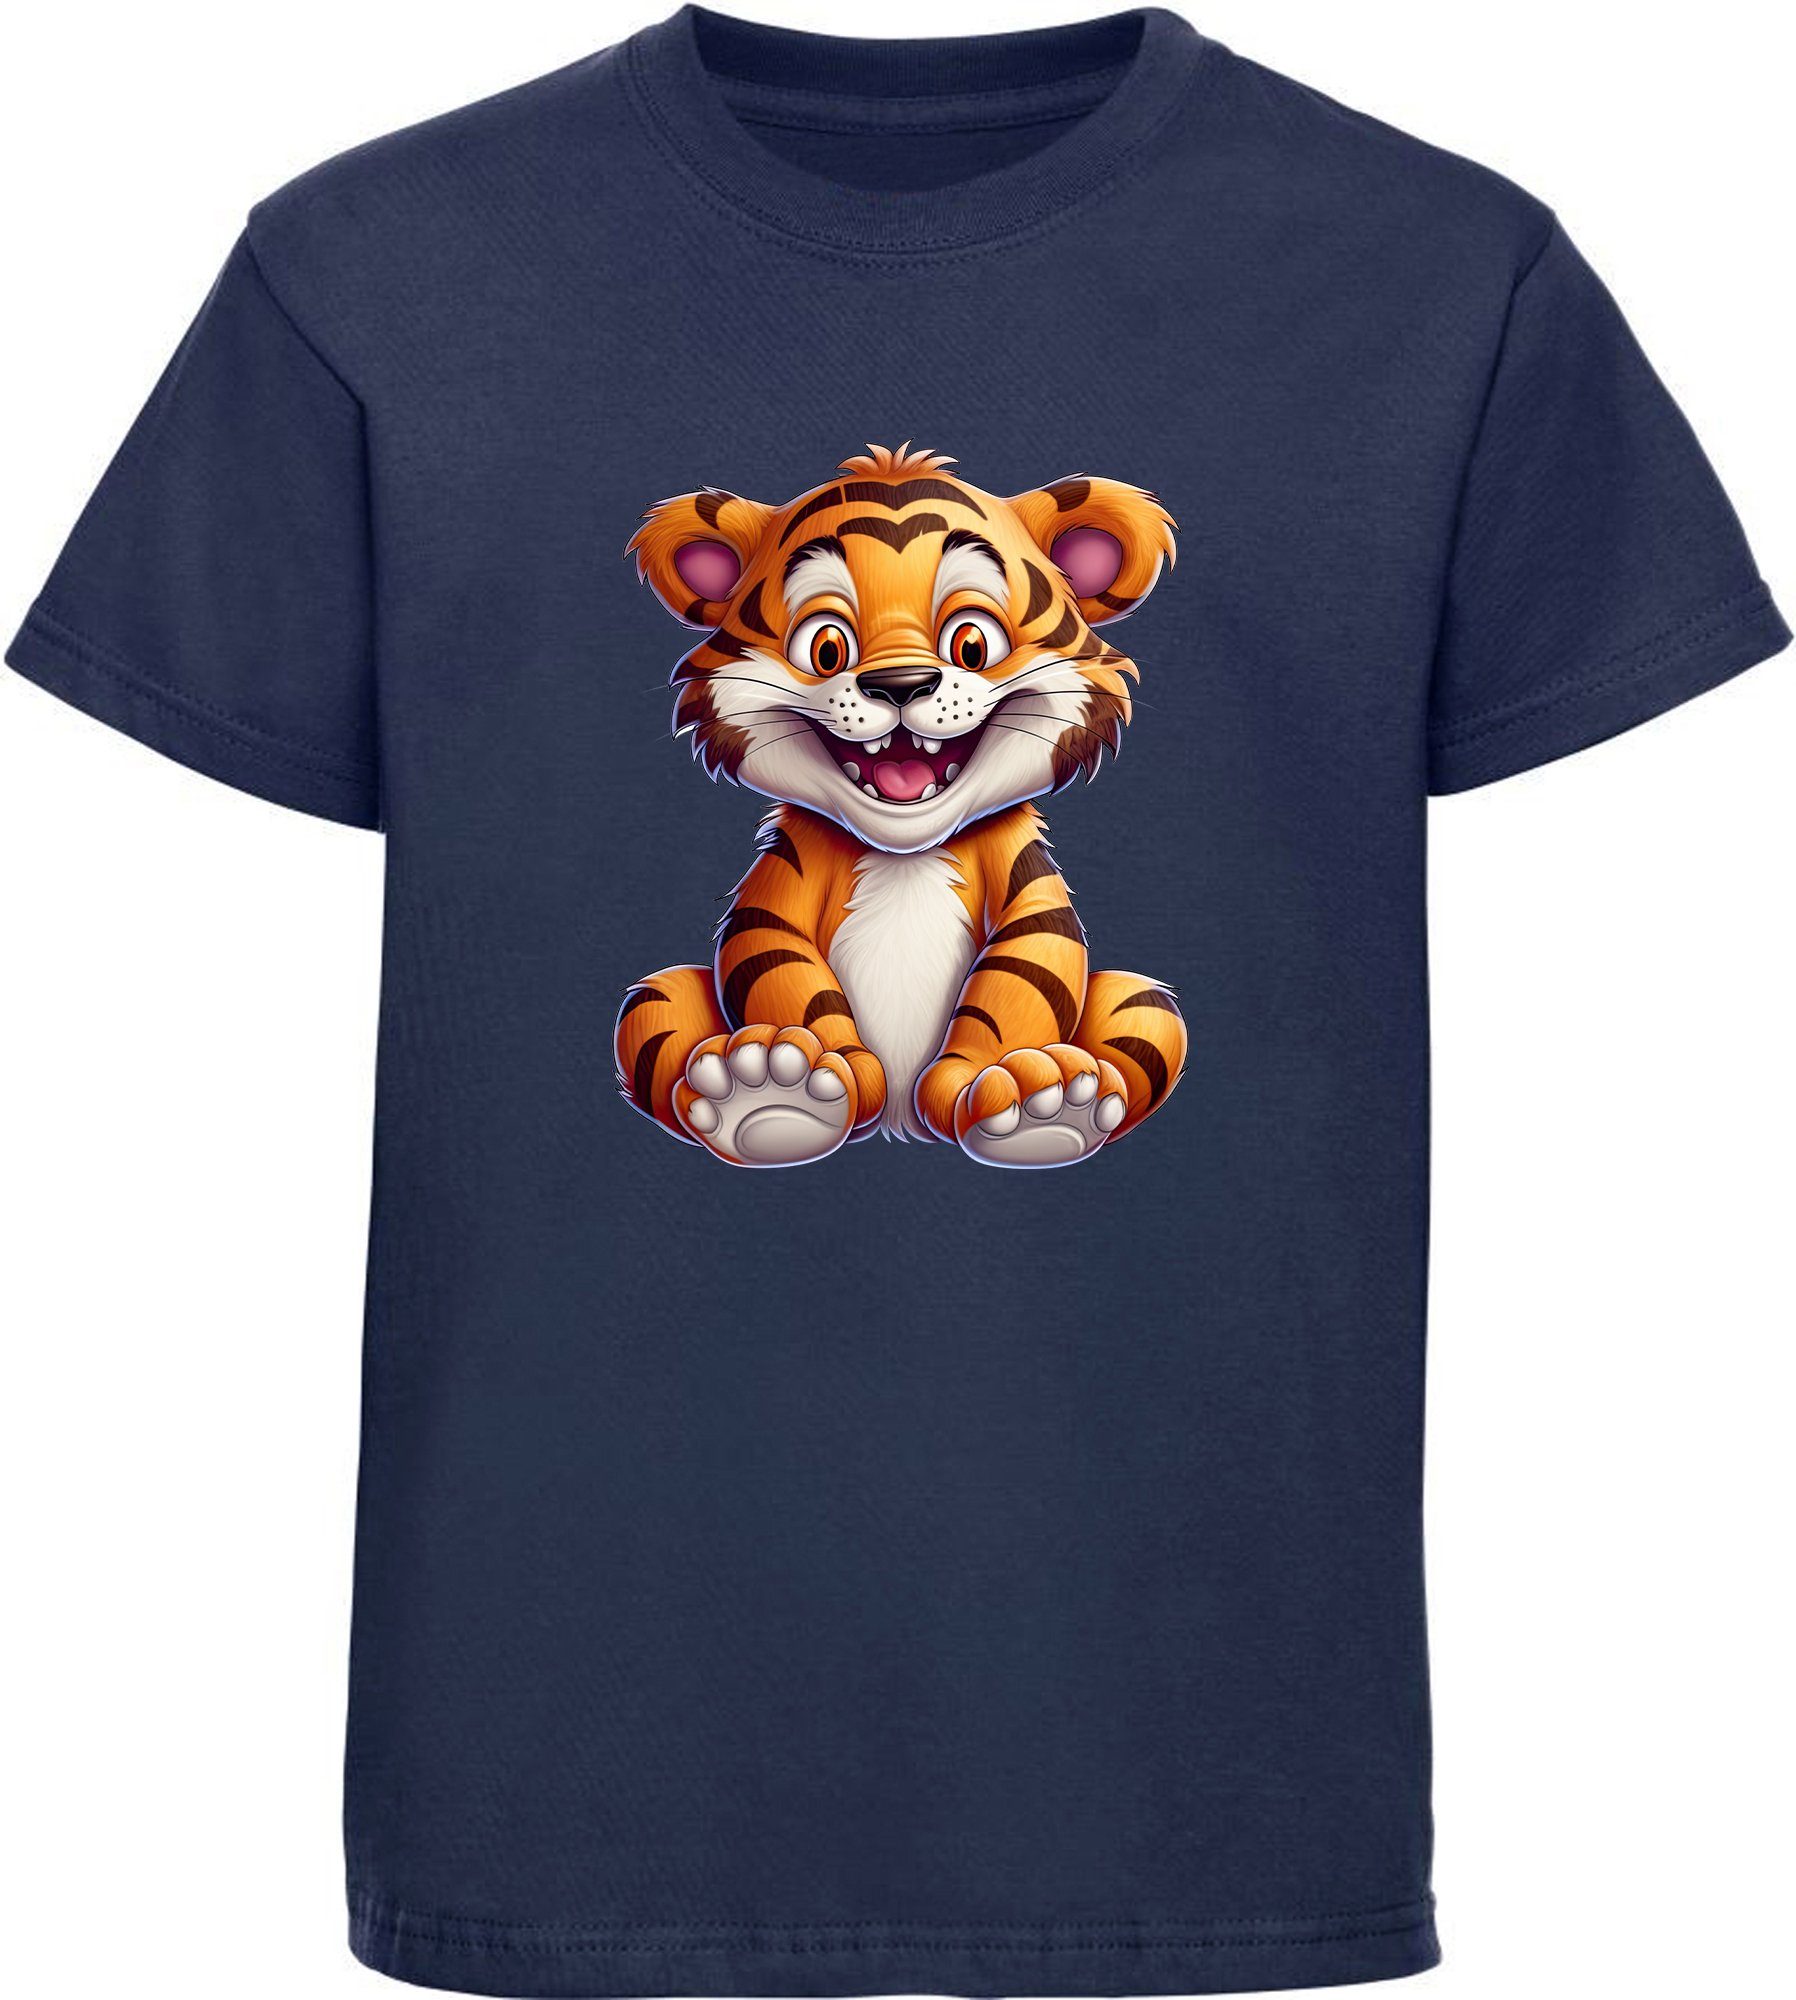 Print Tiger Baby MyDesign24 navy mit Aufdruck, i278 blau T-Shirt Wildtier Kinder Shirt - bedruckt Baumwollshirt